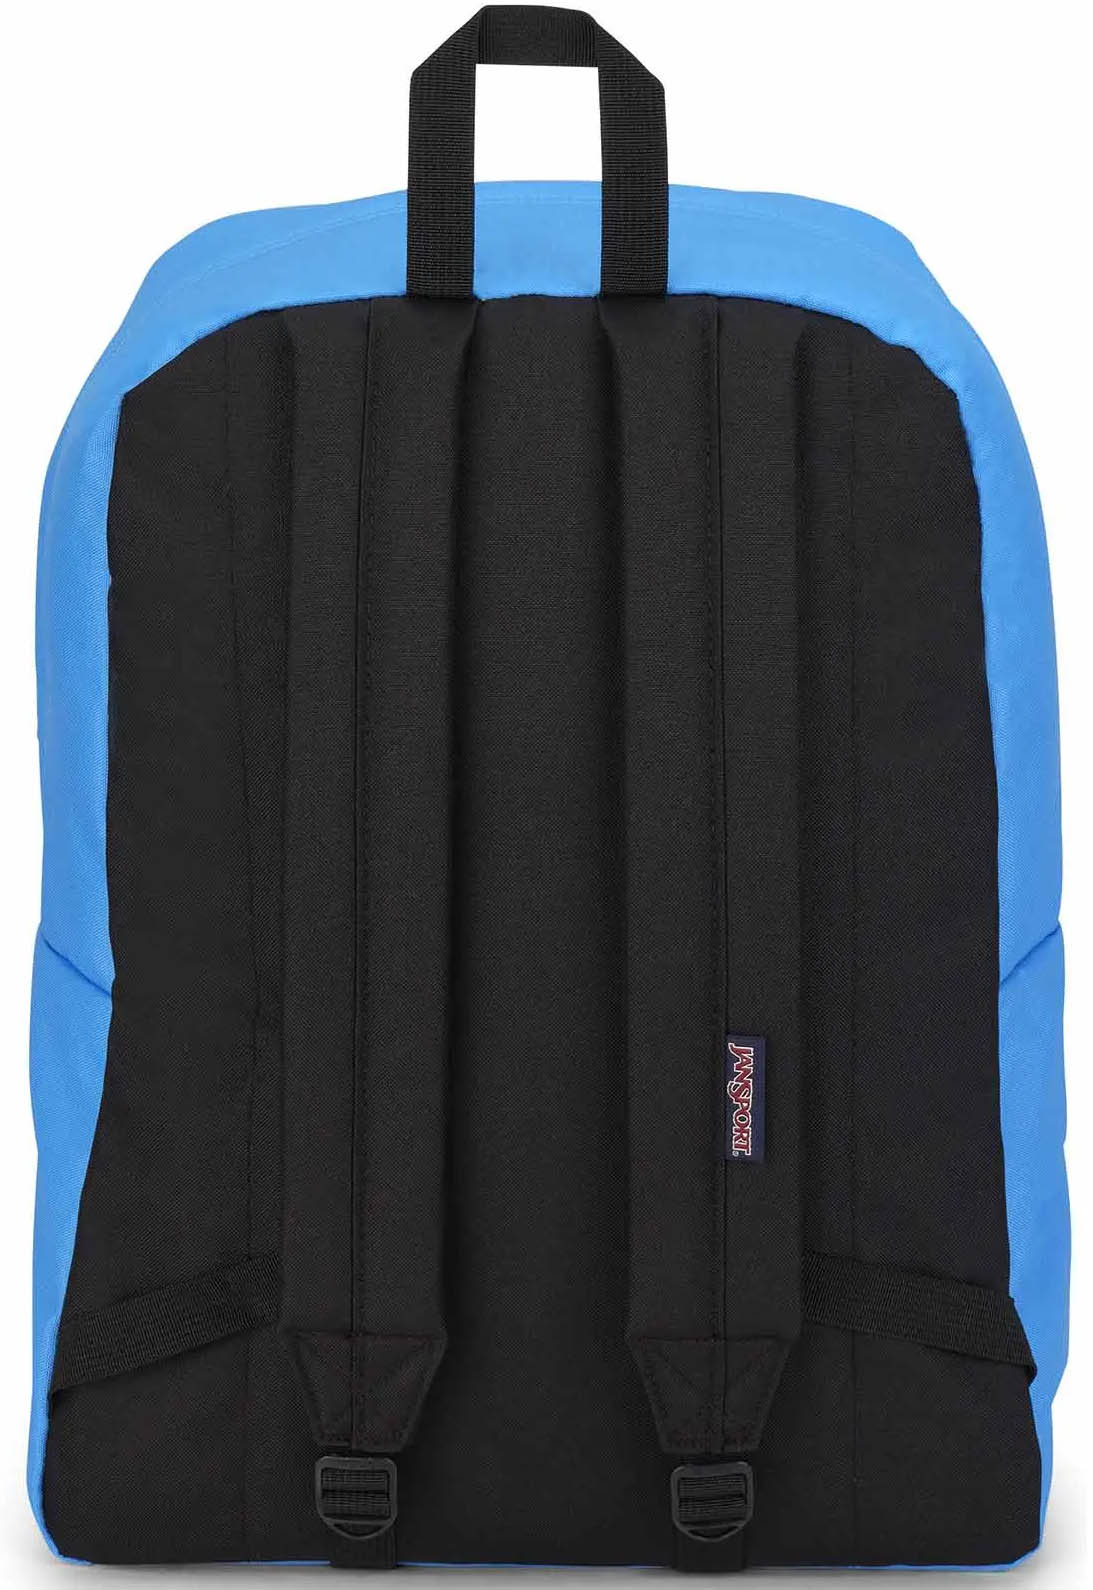 Jansport Superbreak One Backpack - Blue Neon